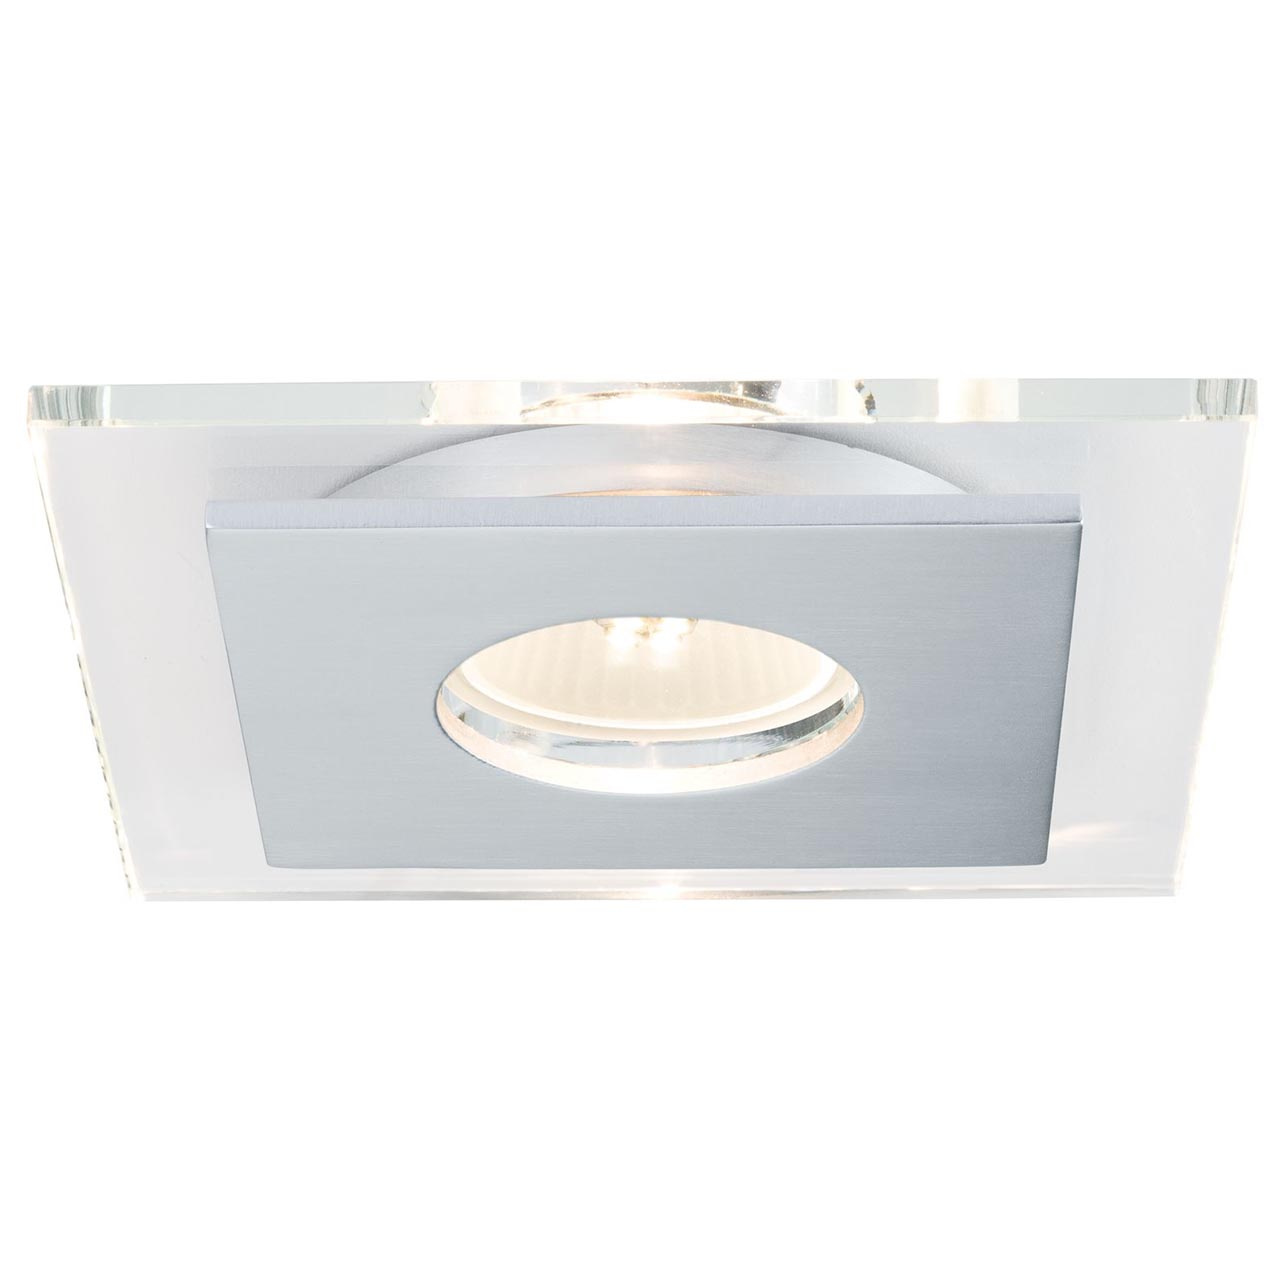 Встраиваемый светодиодный светильник Paulmann Premium EBL Single Layer 92727